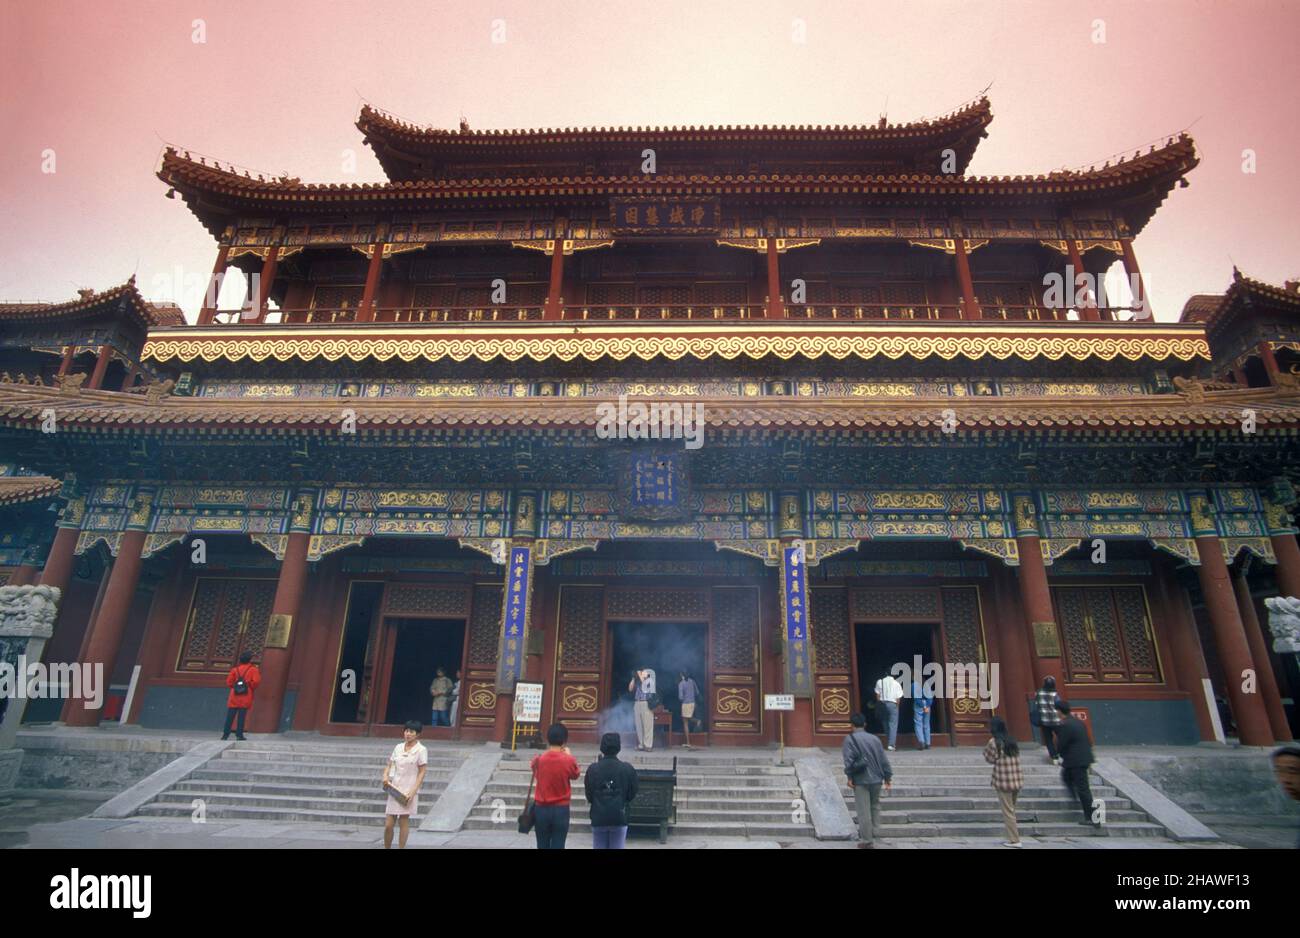 Le temple lama ou le temple Yonghe dans la ville de Beijing en Chine.Chine, Beijing, octobre 1997 Banque D'Images